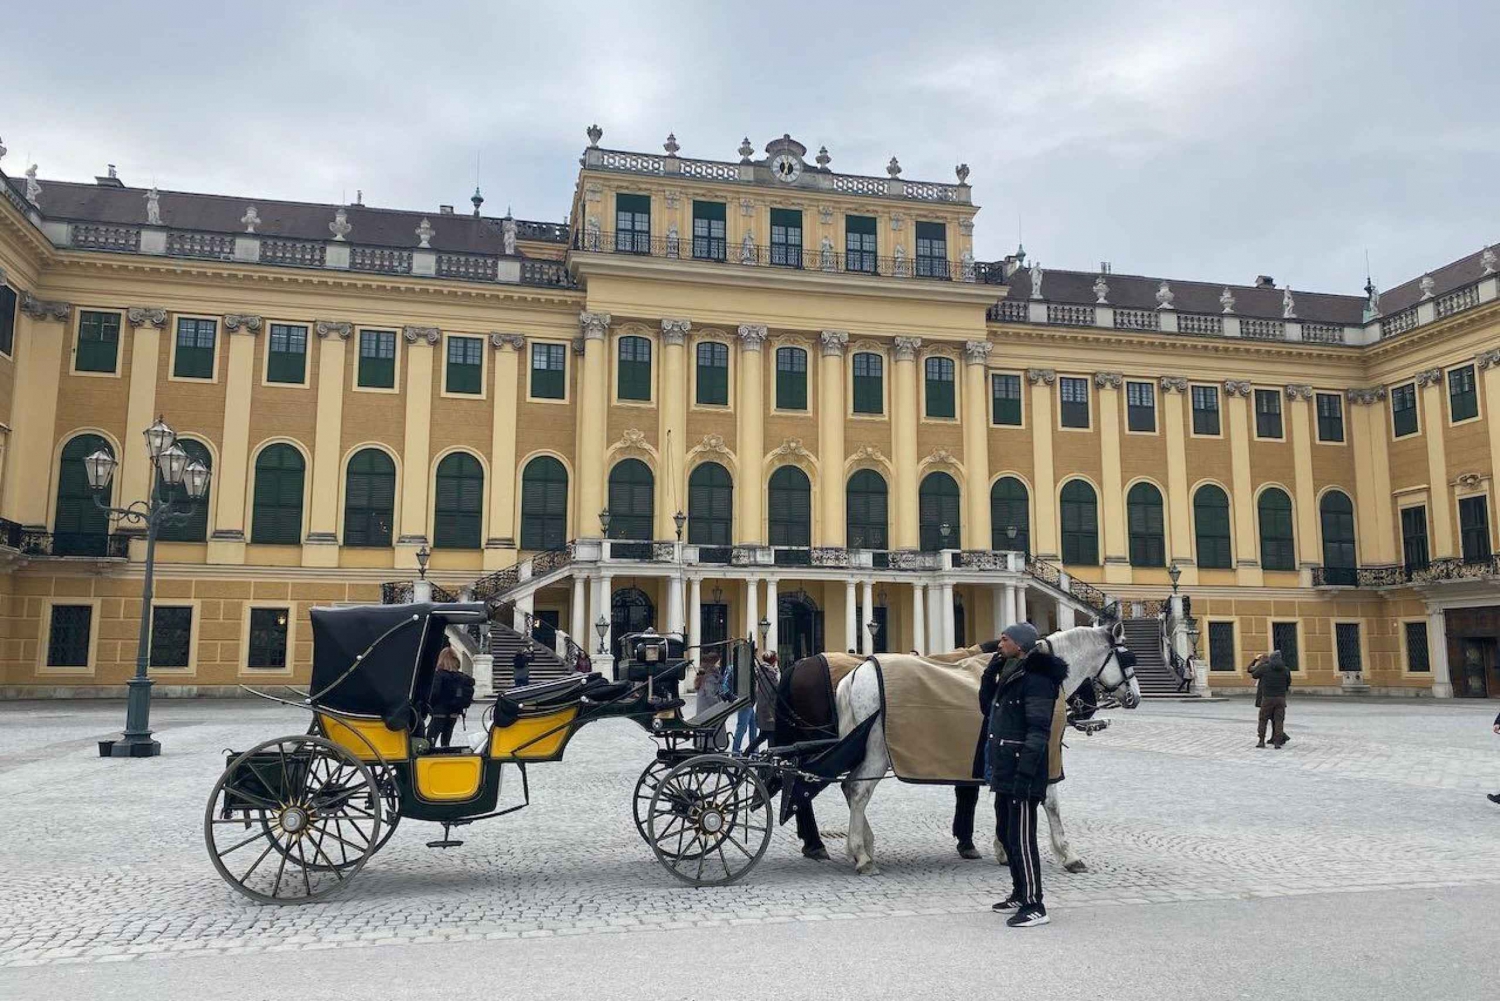 Wien Schönbrunn Palace - Unescos världsarv